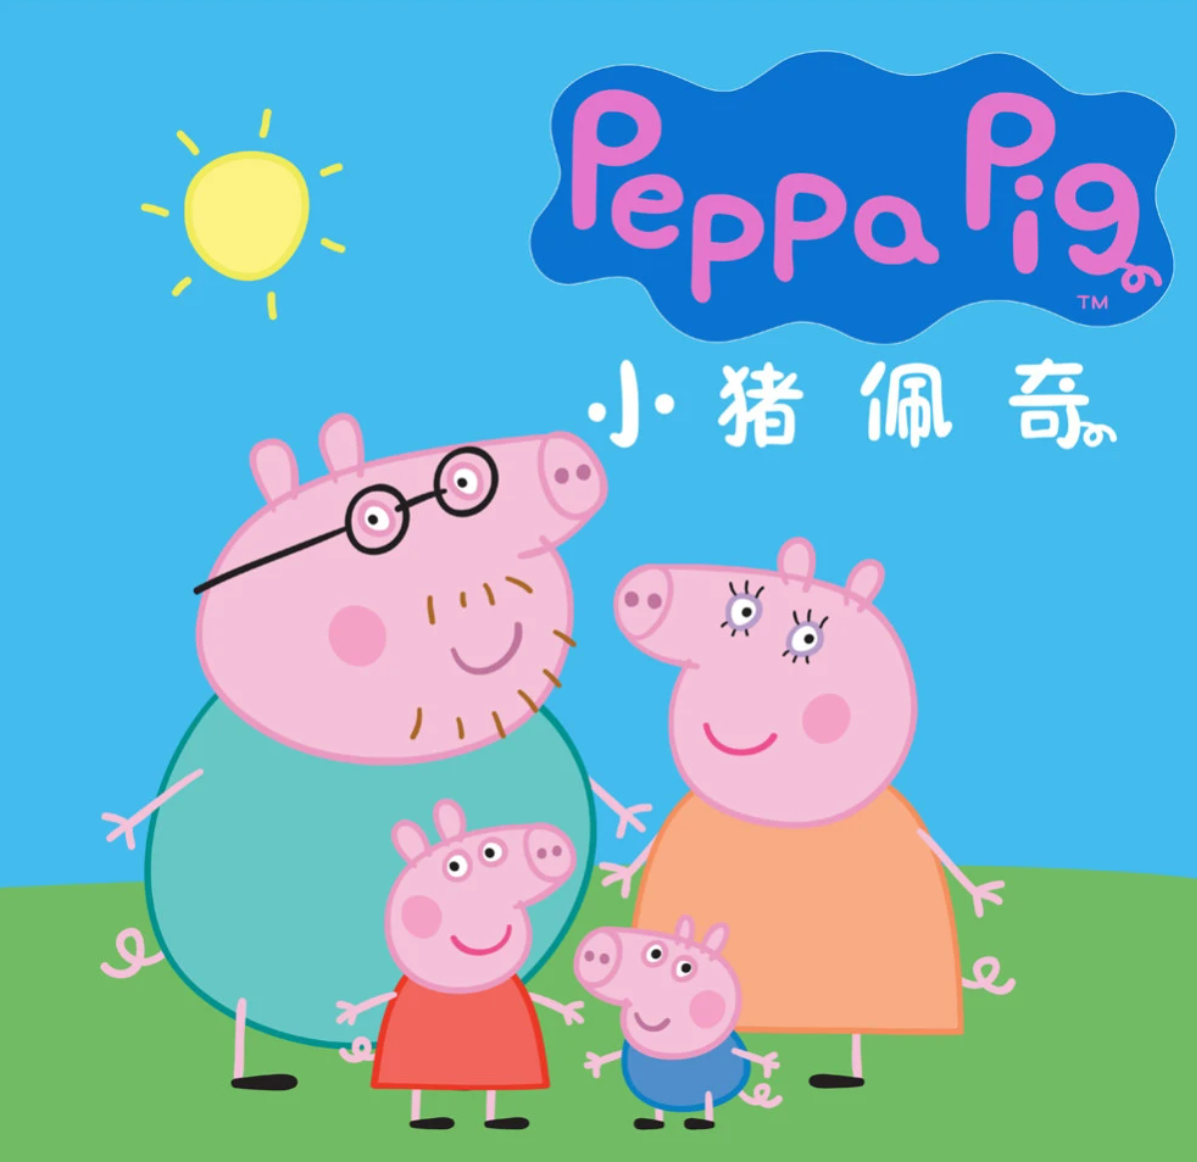 《Peppa Pig小猪佩奇》英文版，全1-8季总403集，1080P高清视频带英文字幕，百度网盘下载！